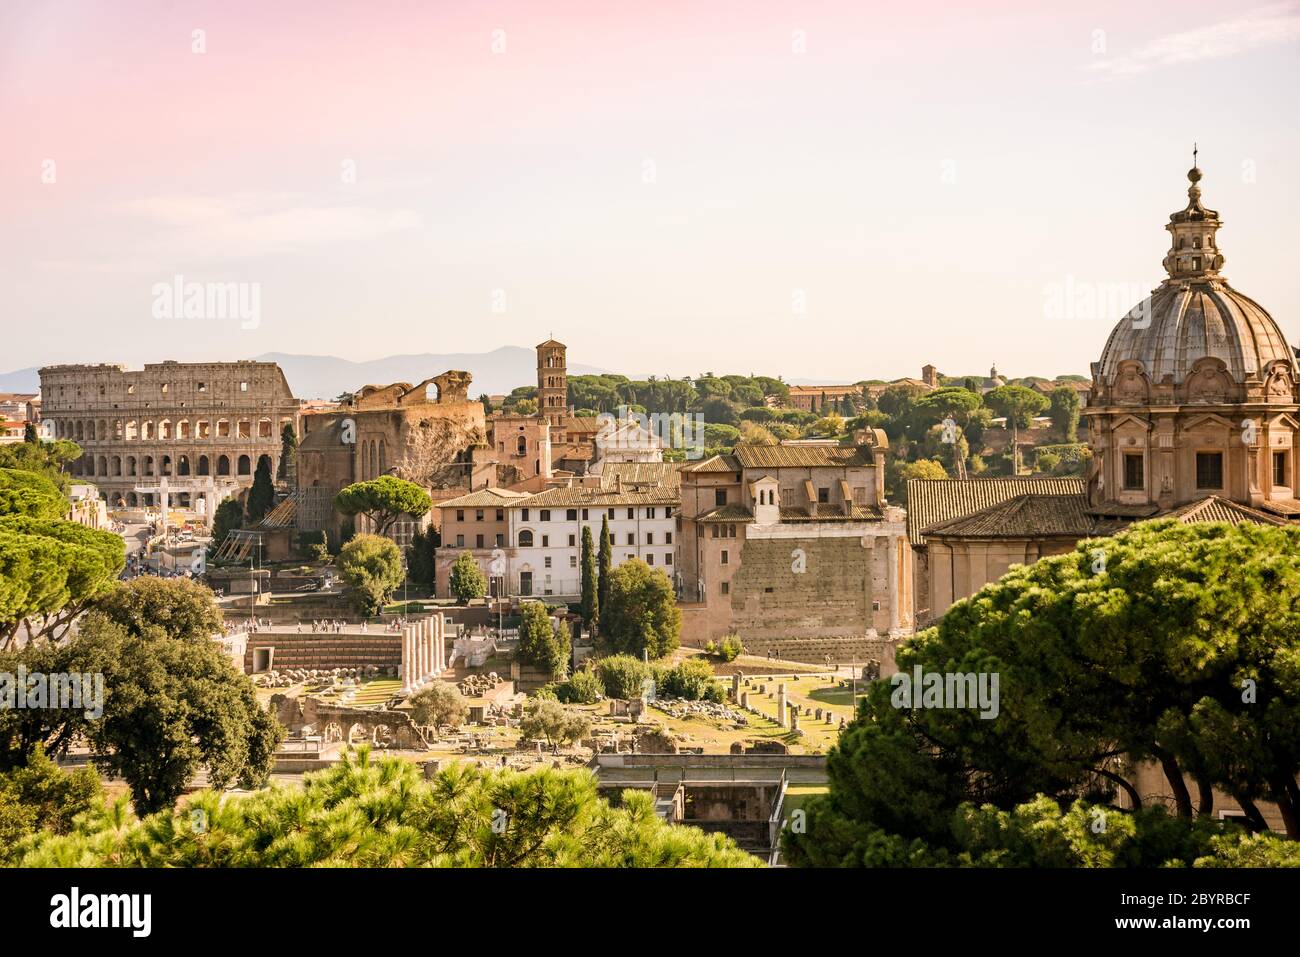 Vue sur le Forum Romanum et le Colisée depuis la colline du Capitole, en Italie, à Rome. Voyager dans le monde Banque D'Images